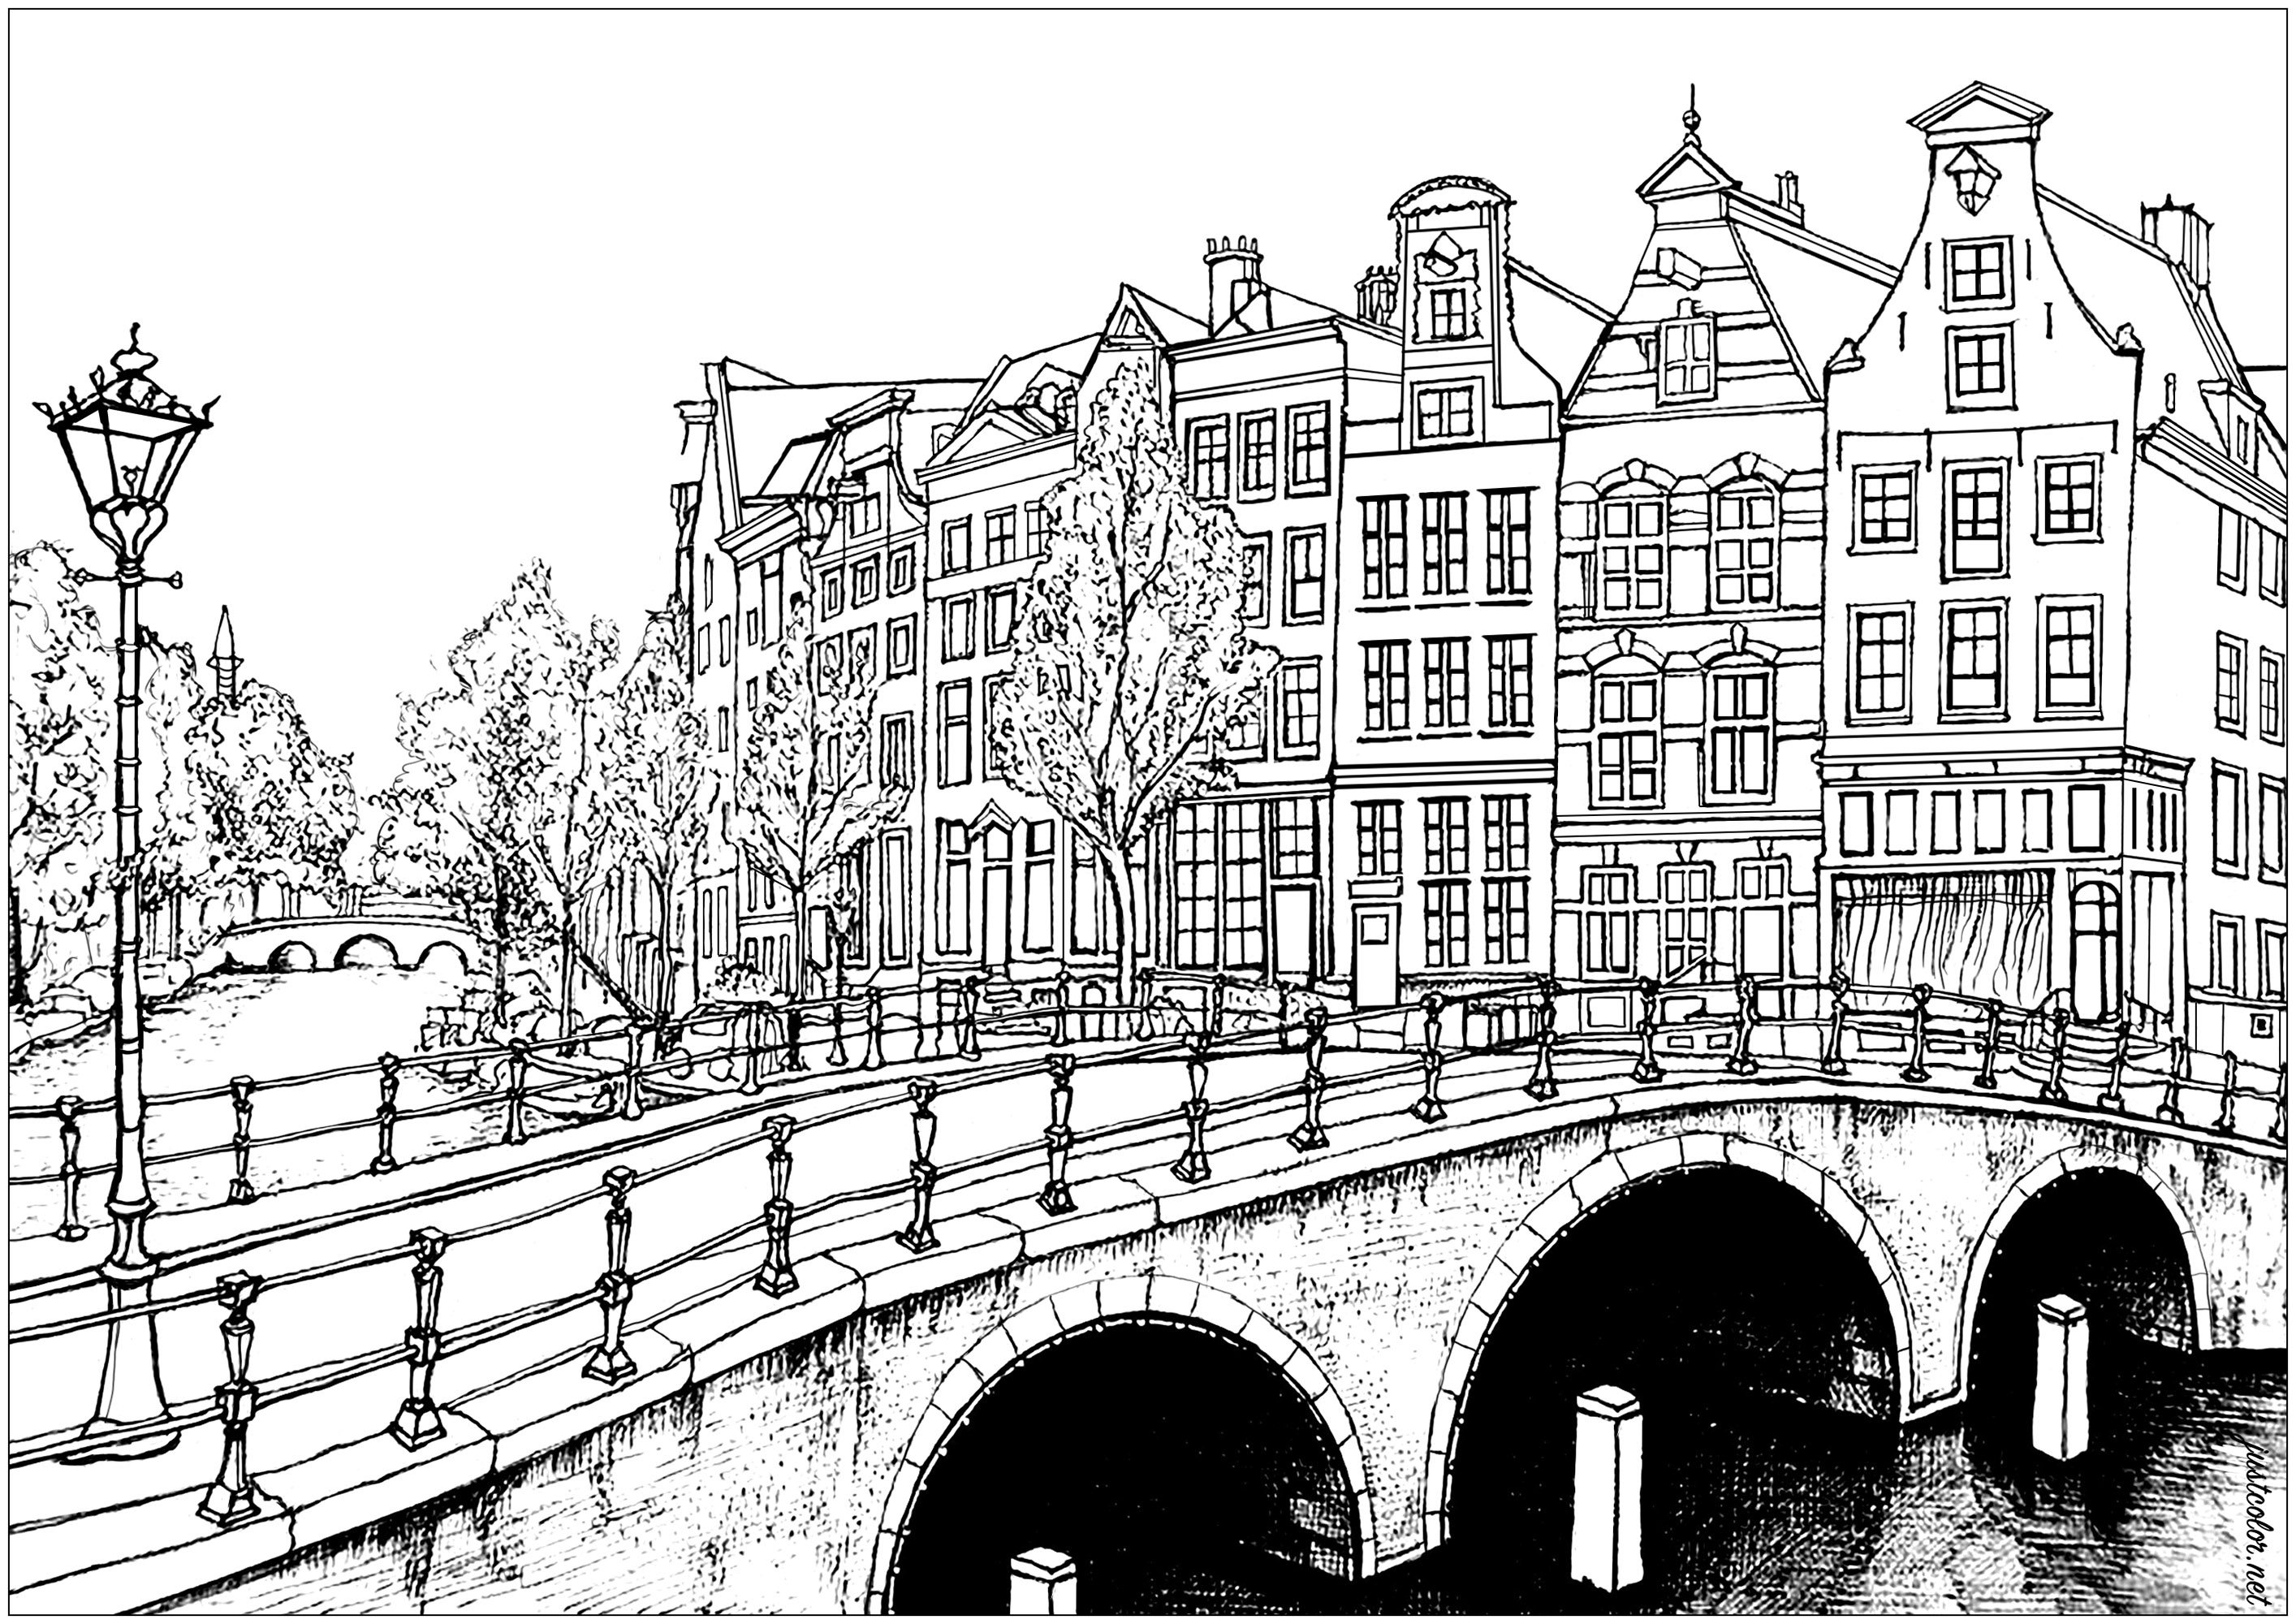 Casas e pontes de Amesterdão. Com mais de 165 canais, é possível percorrer 100 quilómetros sobre a água em Amesterdão! Ainda mais impressionante, existem 1.281 pontes na cidade.A capital holandesa também tem a maior concentração de museus por metro quadrado de qualquer cidade do mundo. Os museus Van Gogh, Rijksmuseum e Stedelijk estão entre os mais famosos que se pode visitar nesta incrível cidade.